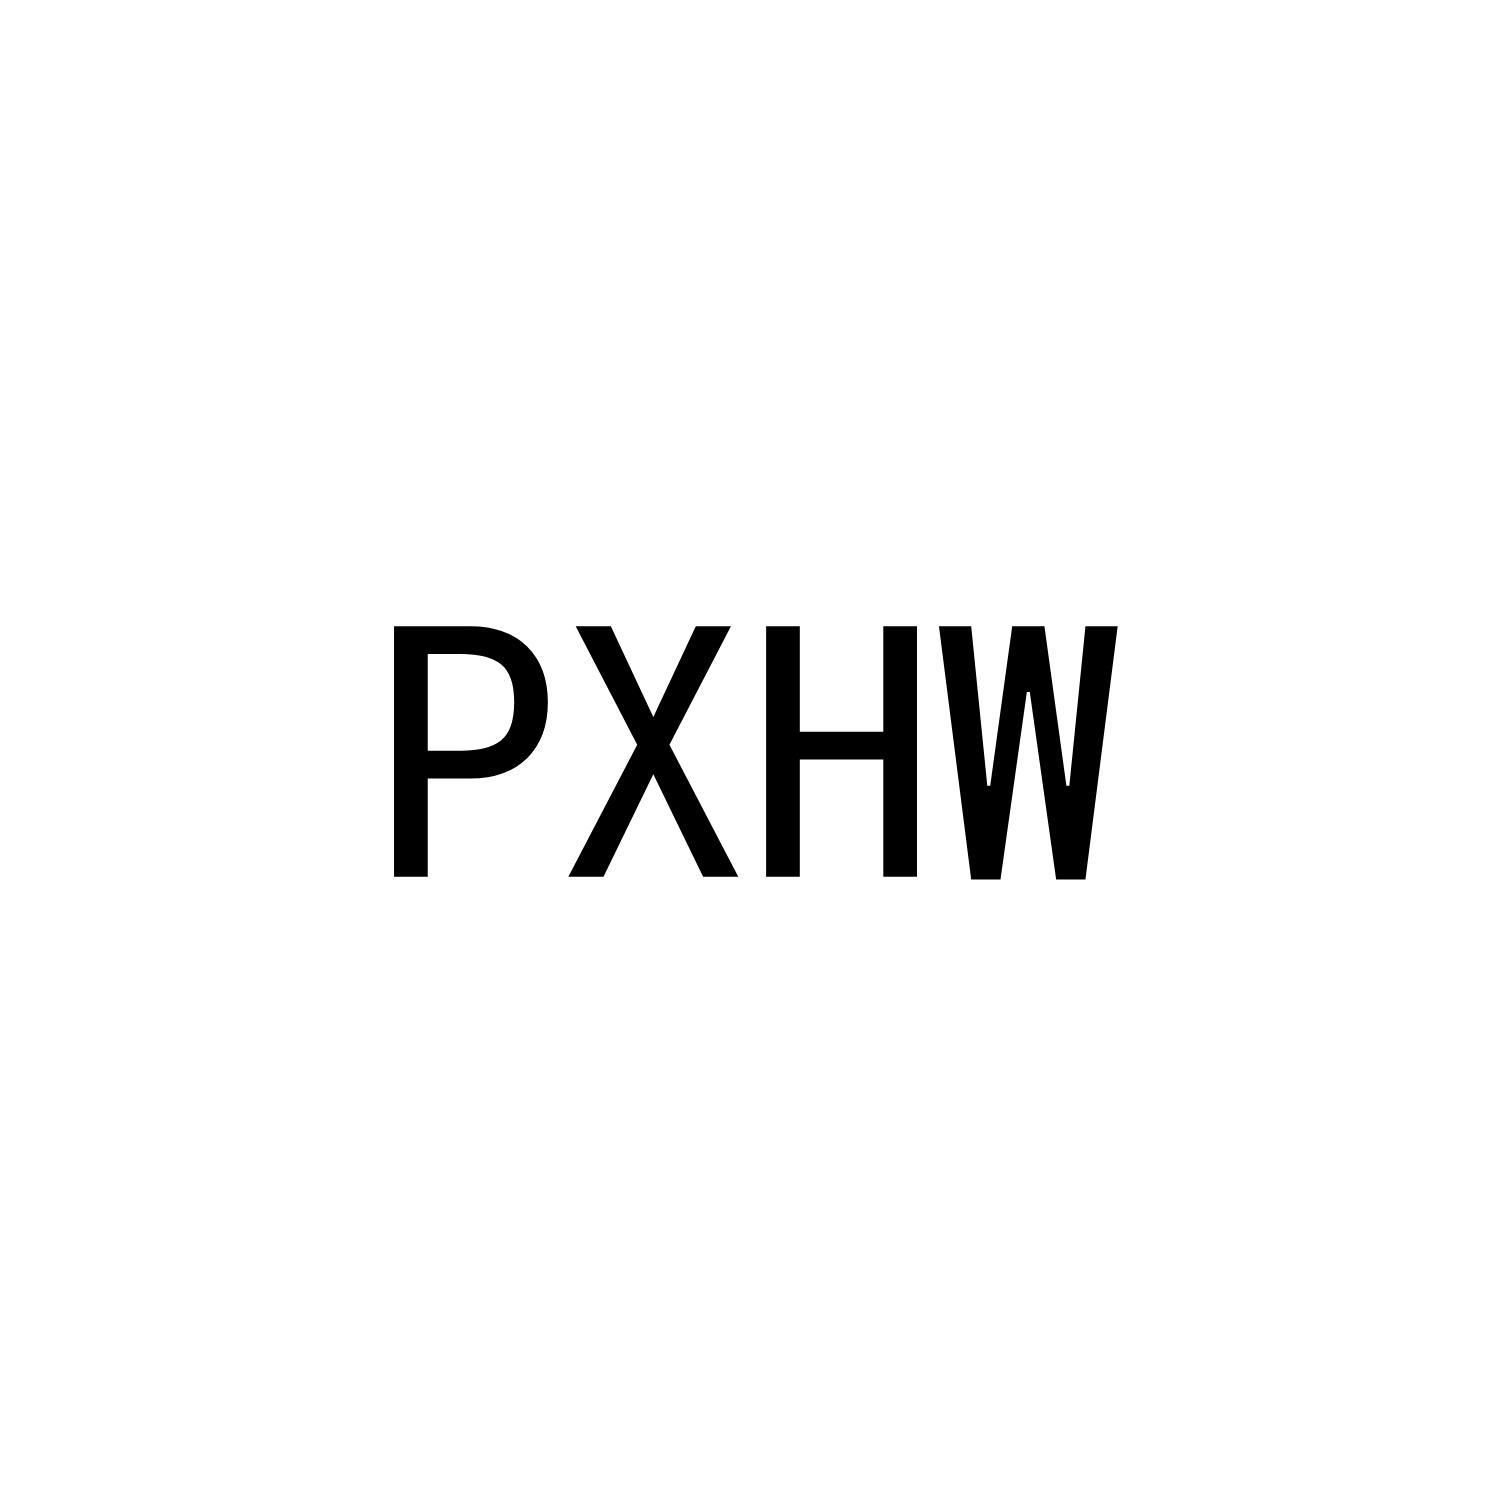 PXHW